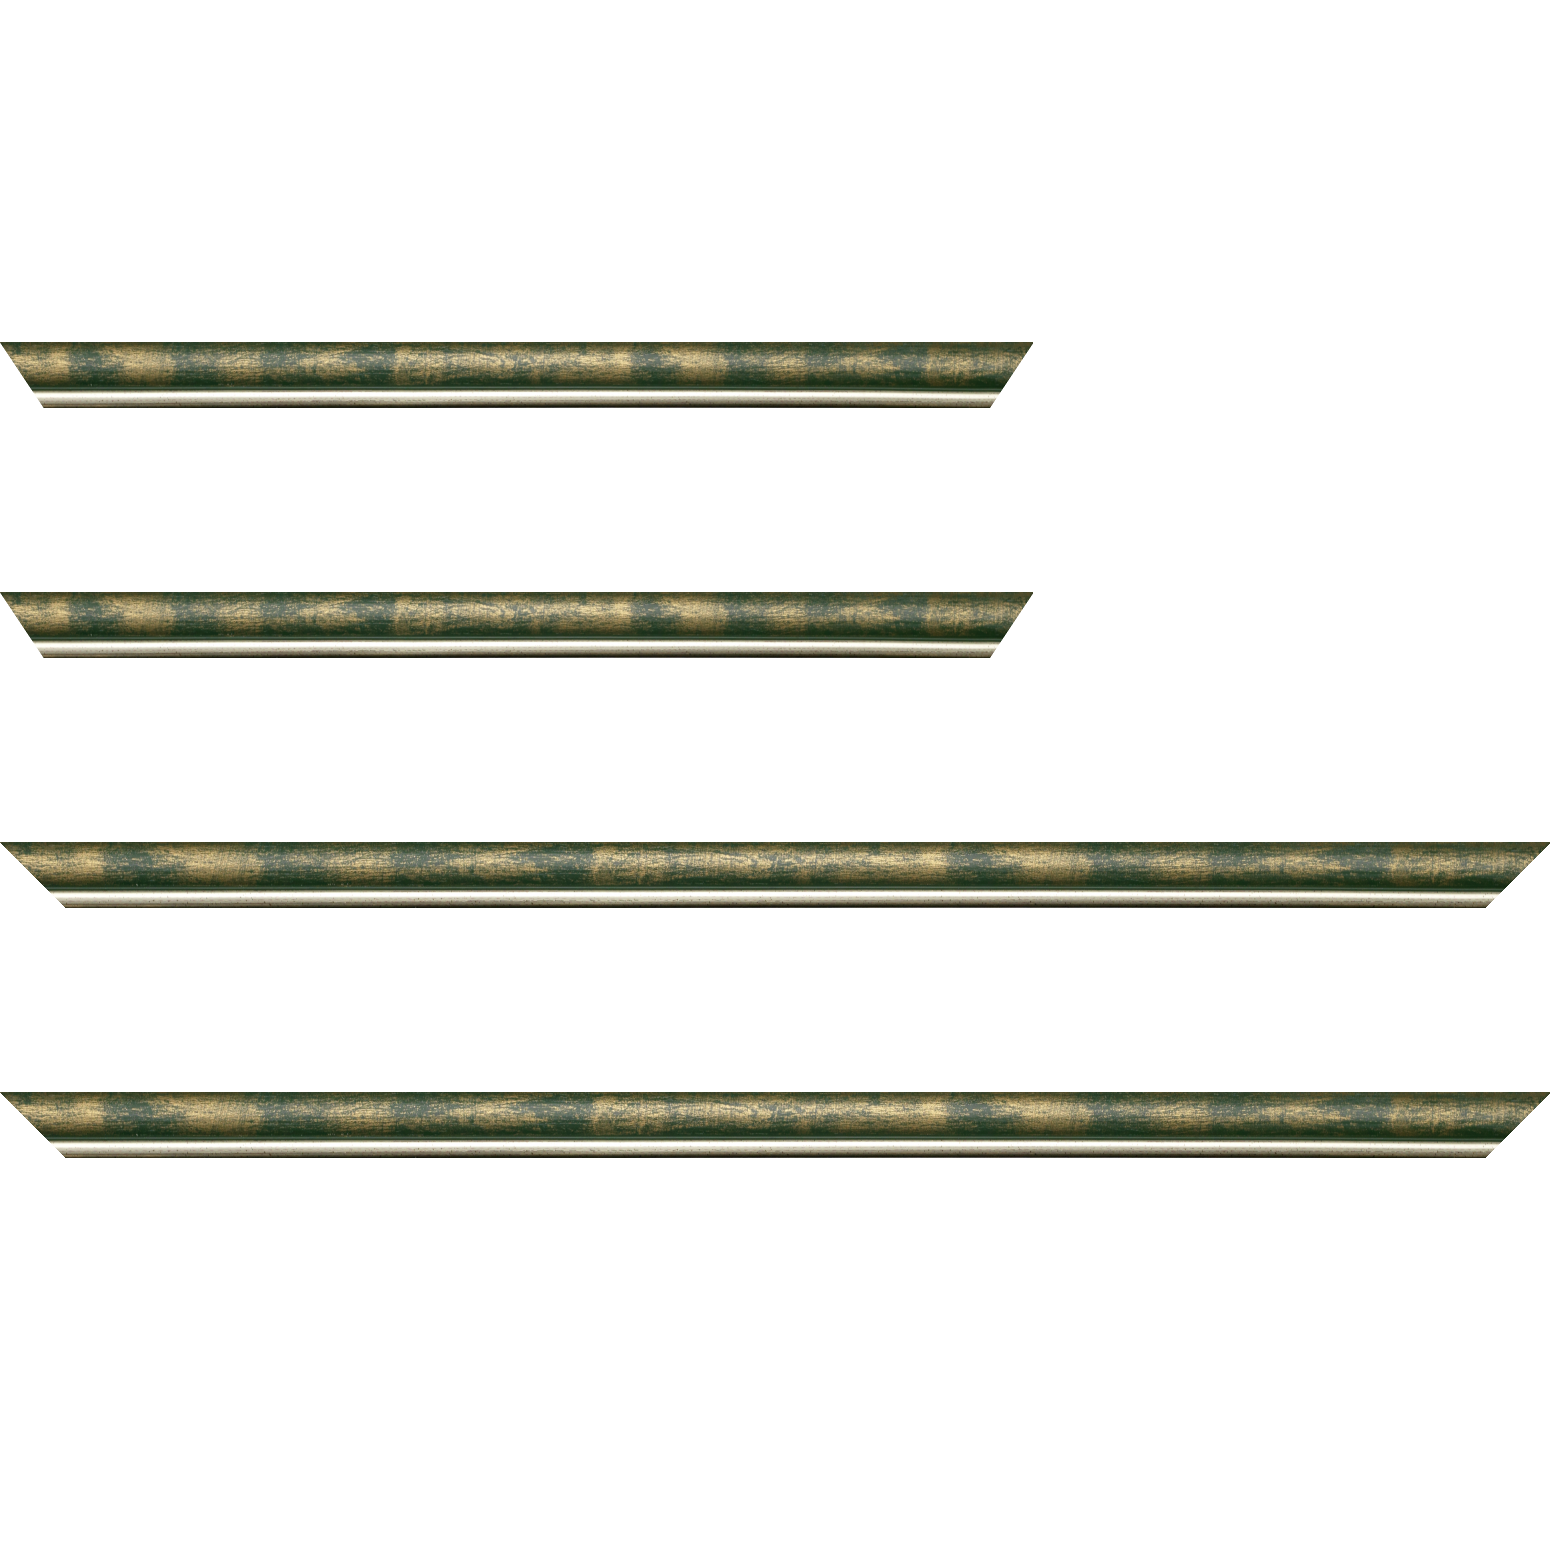 Baguette bois profil arrondi largeur 2.1cm  couleur vert fond or filet argent chaud